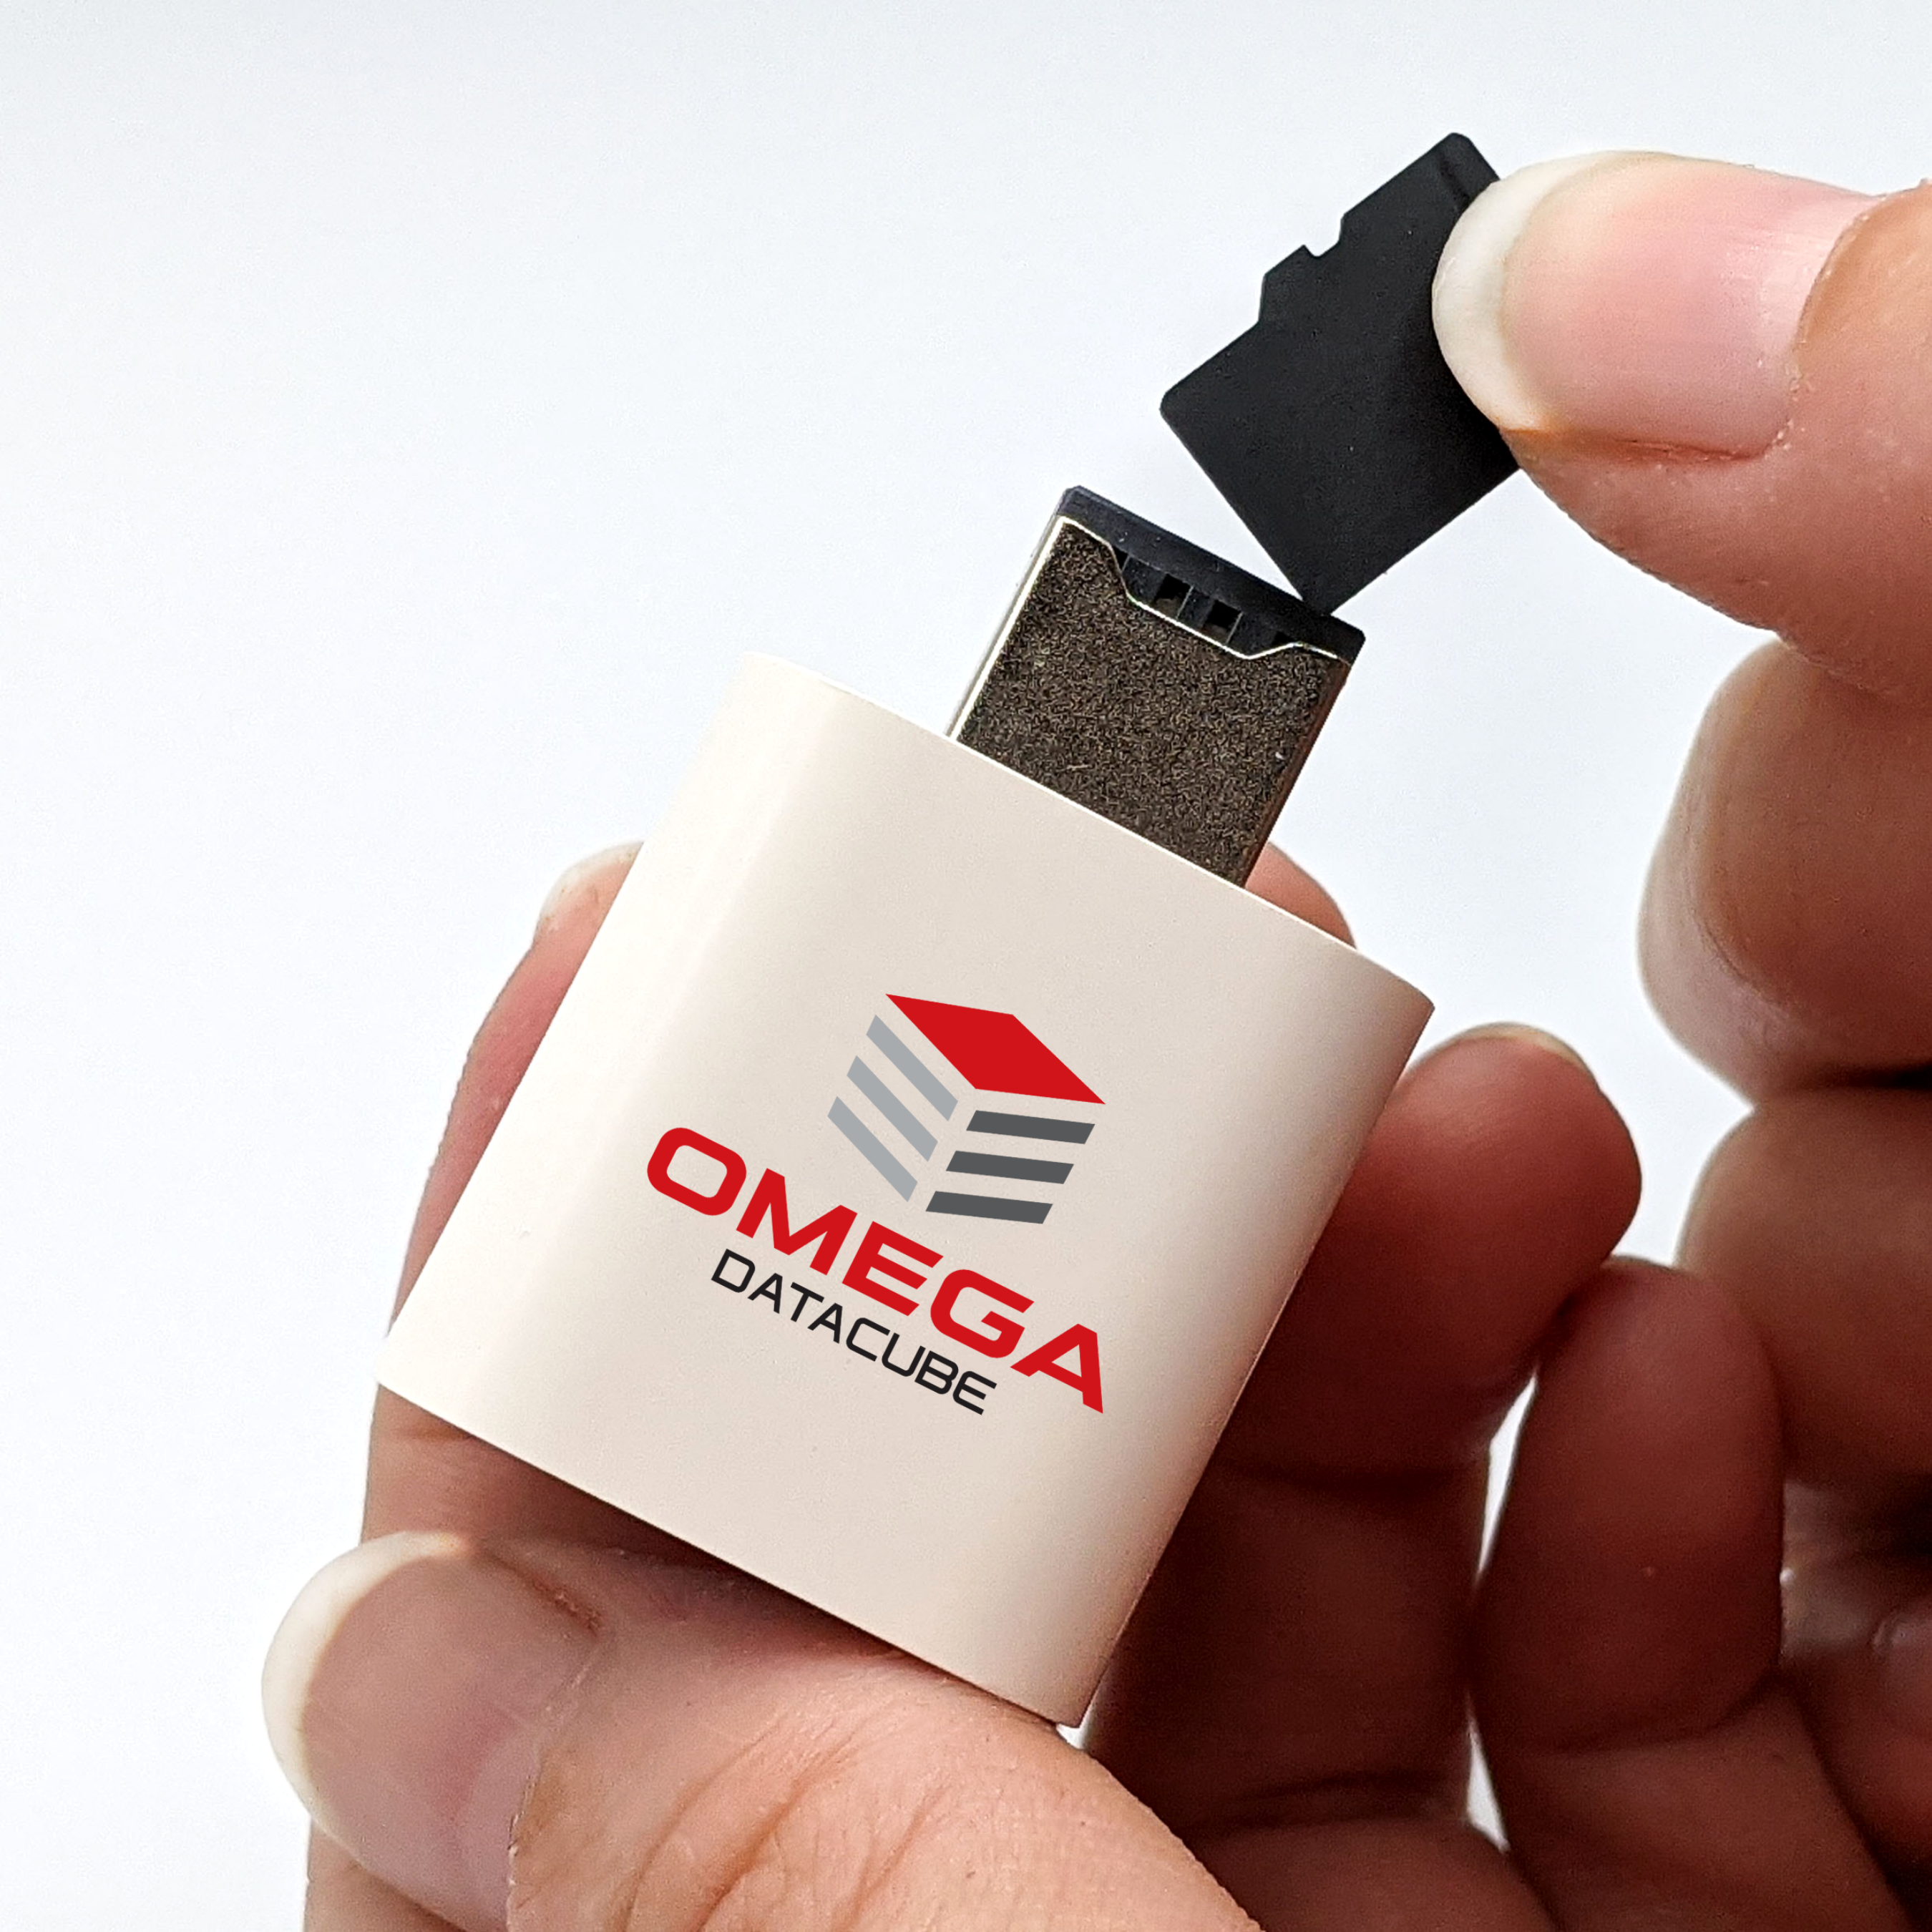 Omega DataCube - 256 GB